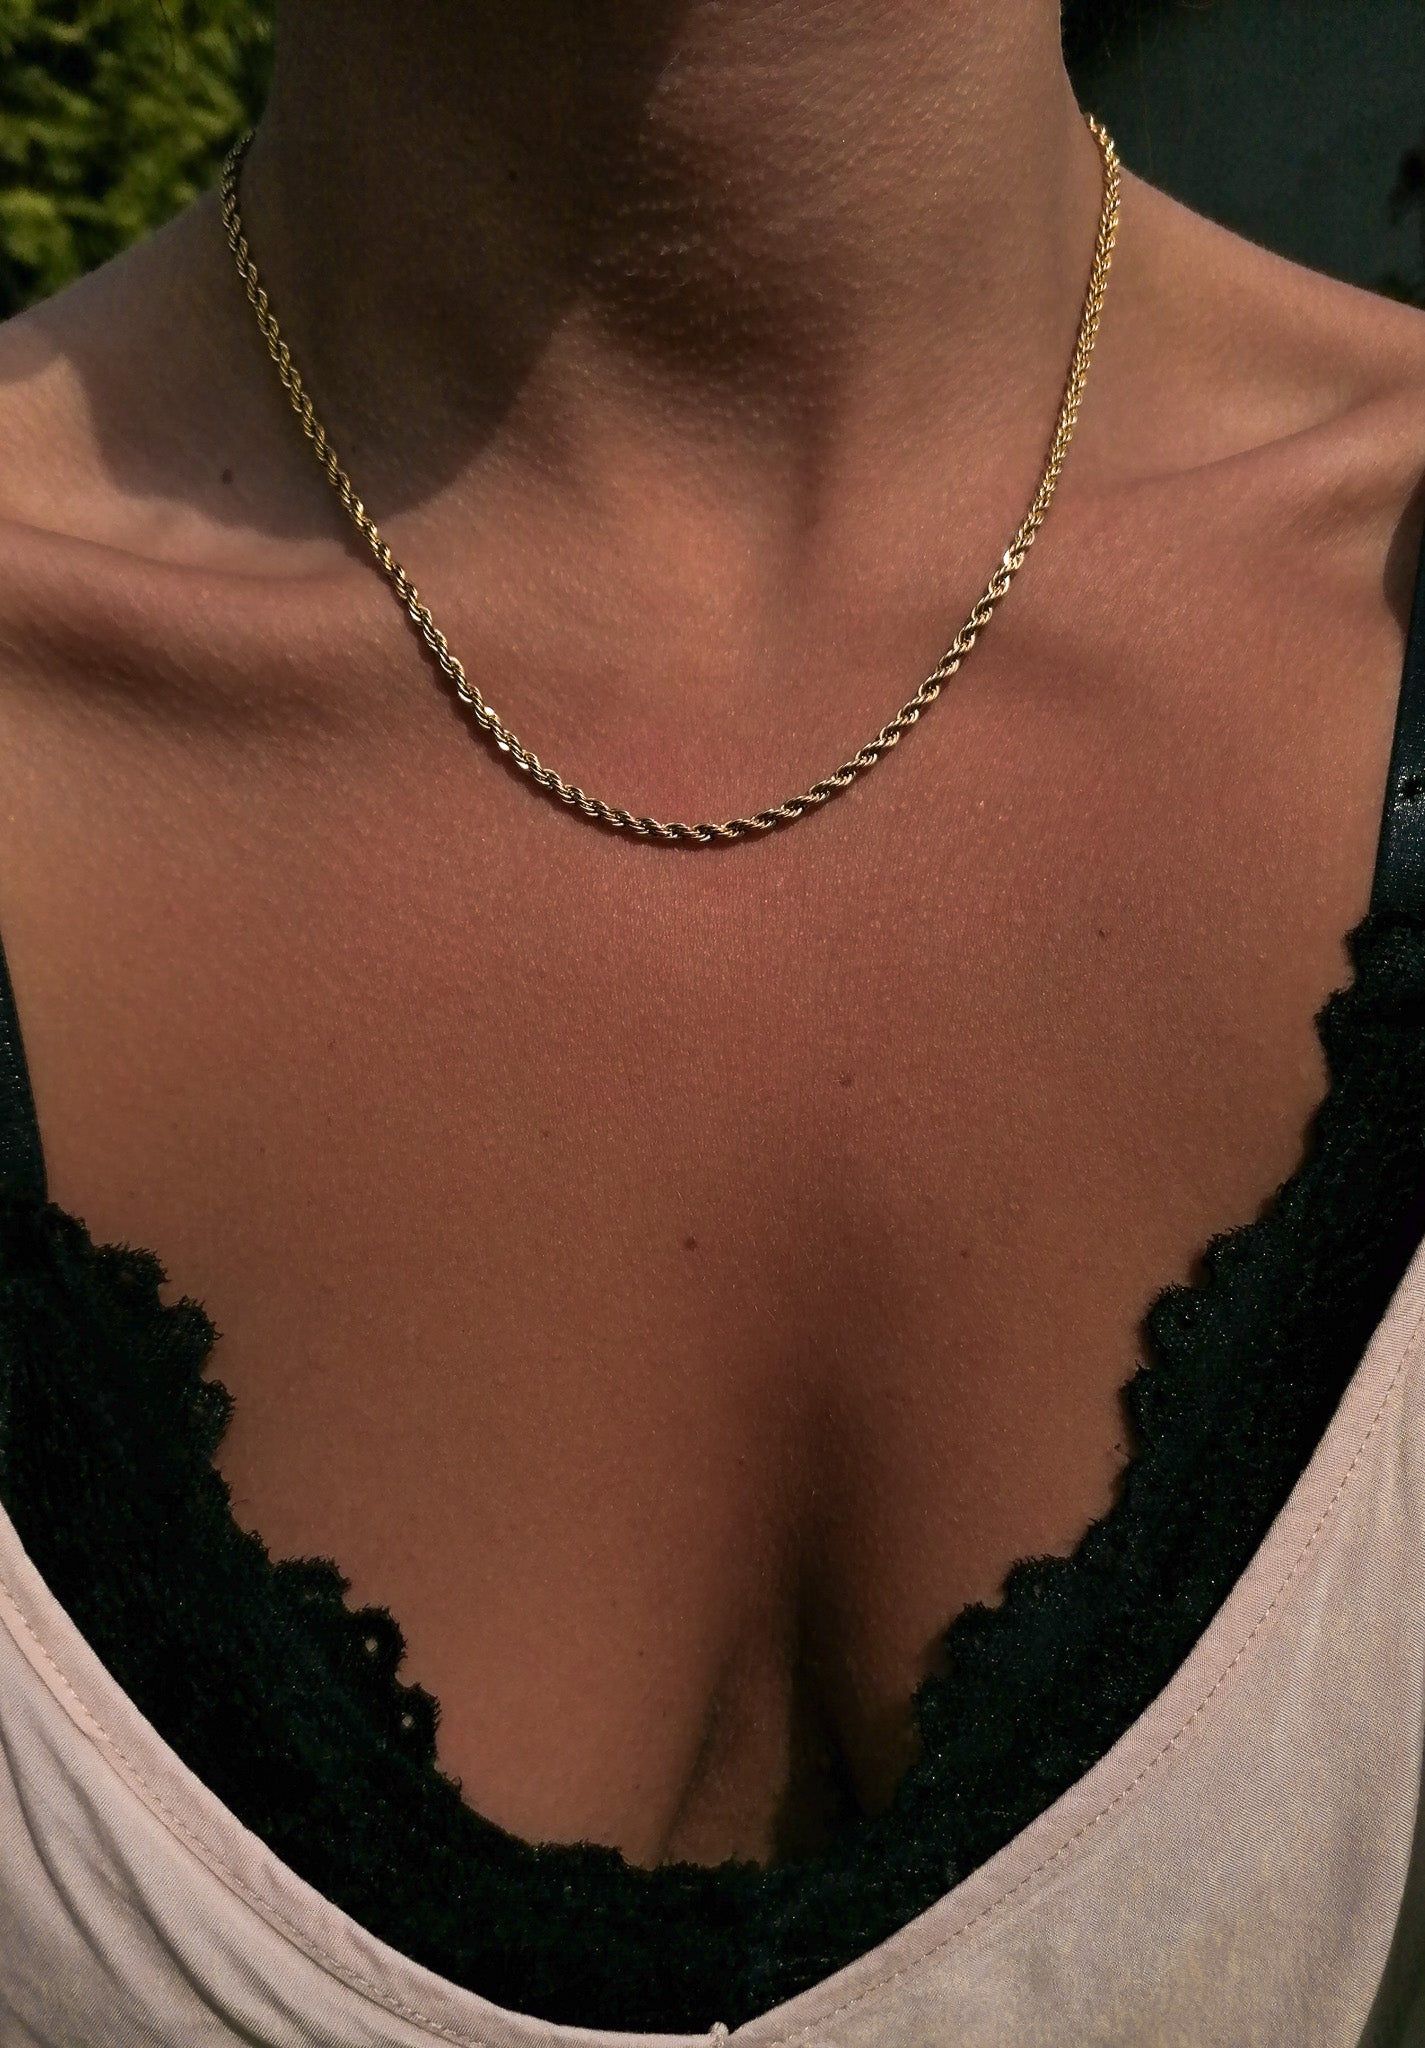 Milano necklace